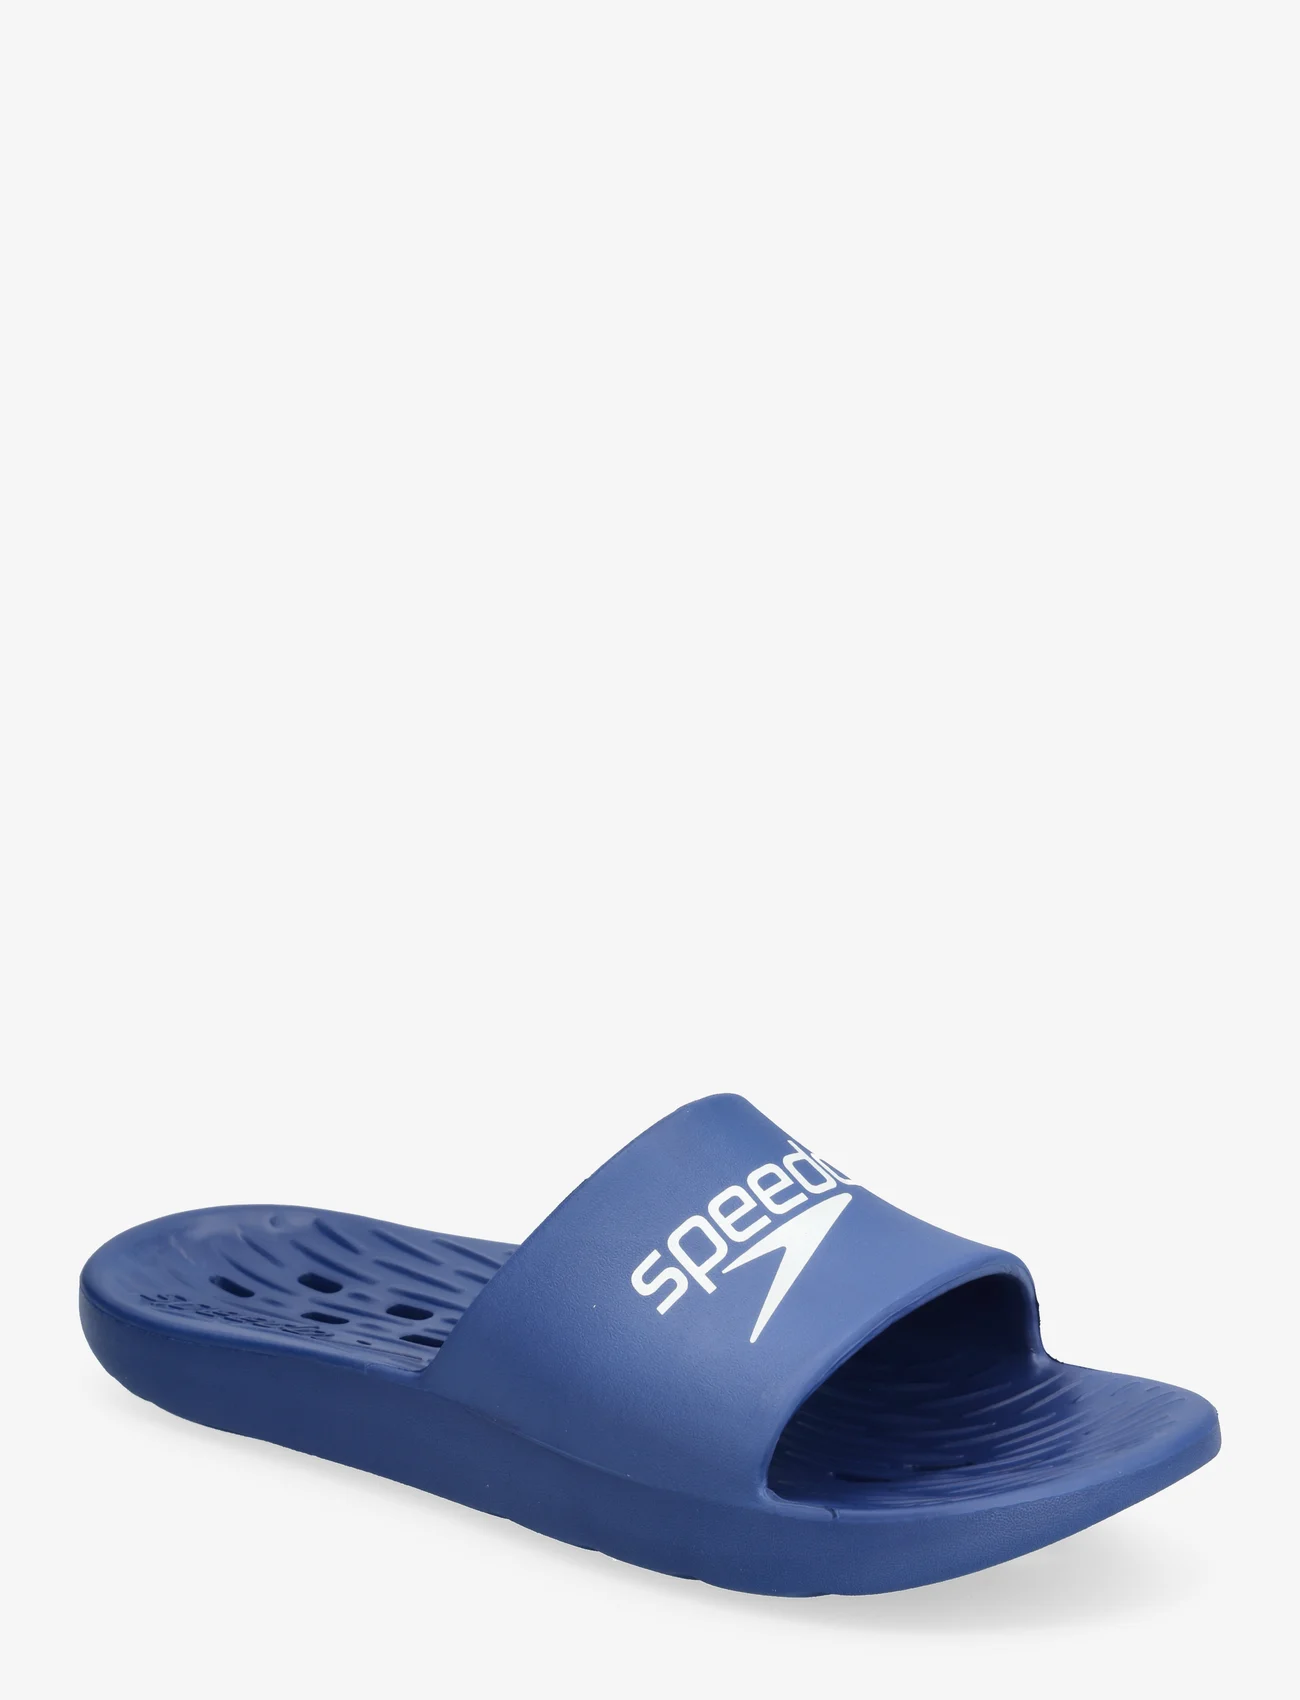 Speedo - Speedo Slide AM - sandals - navy/white - 0